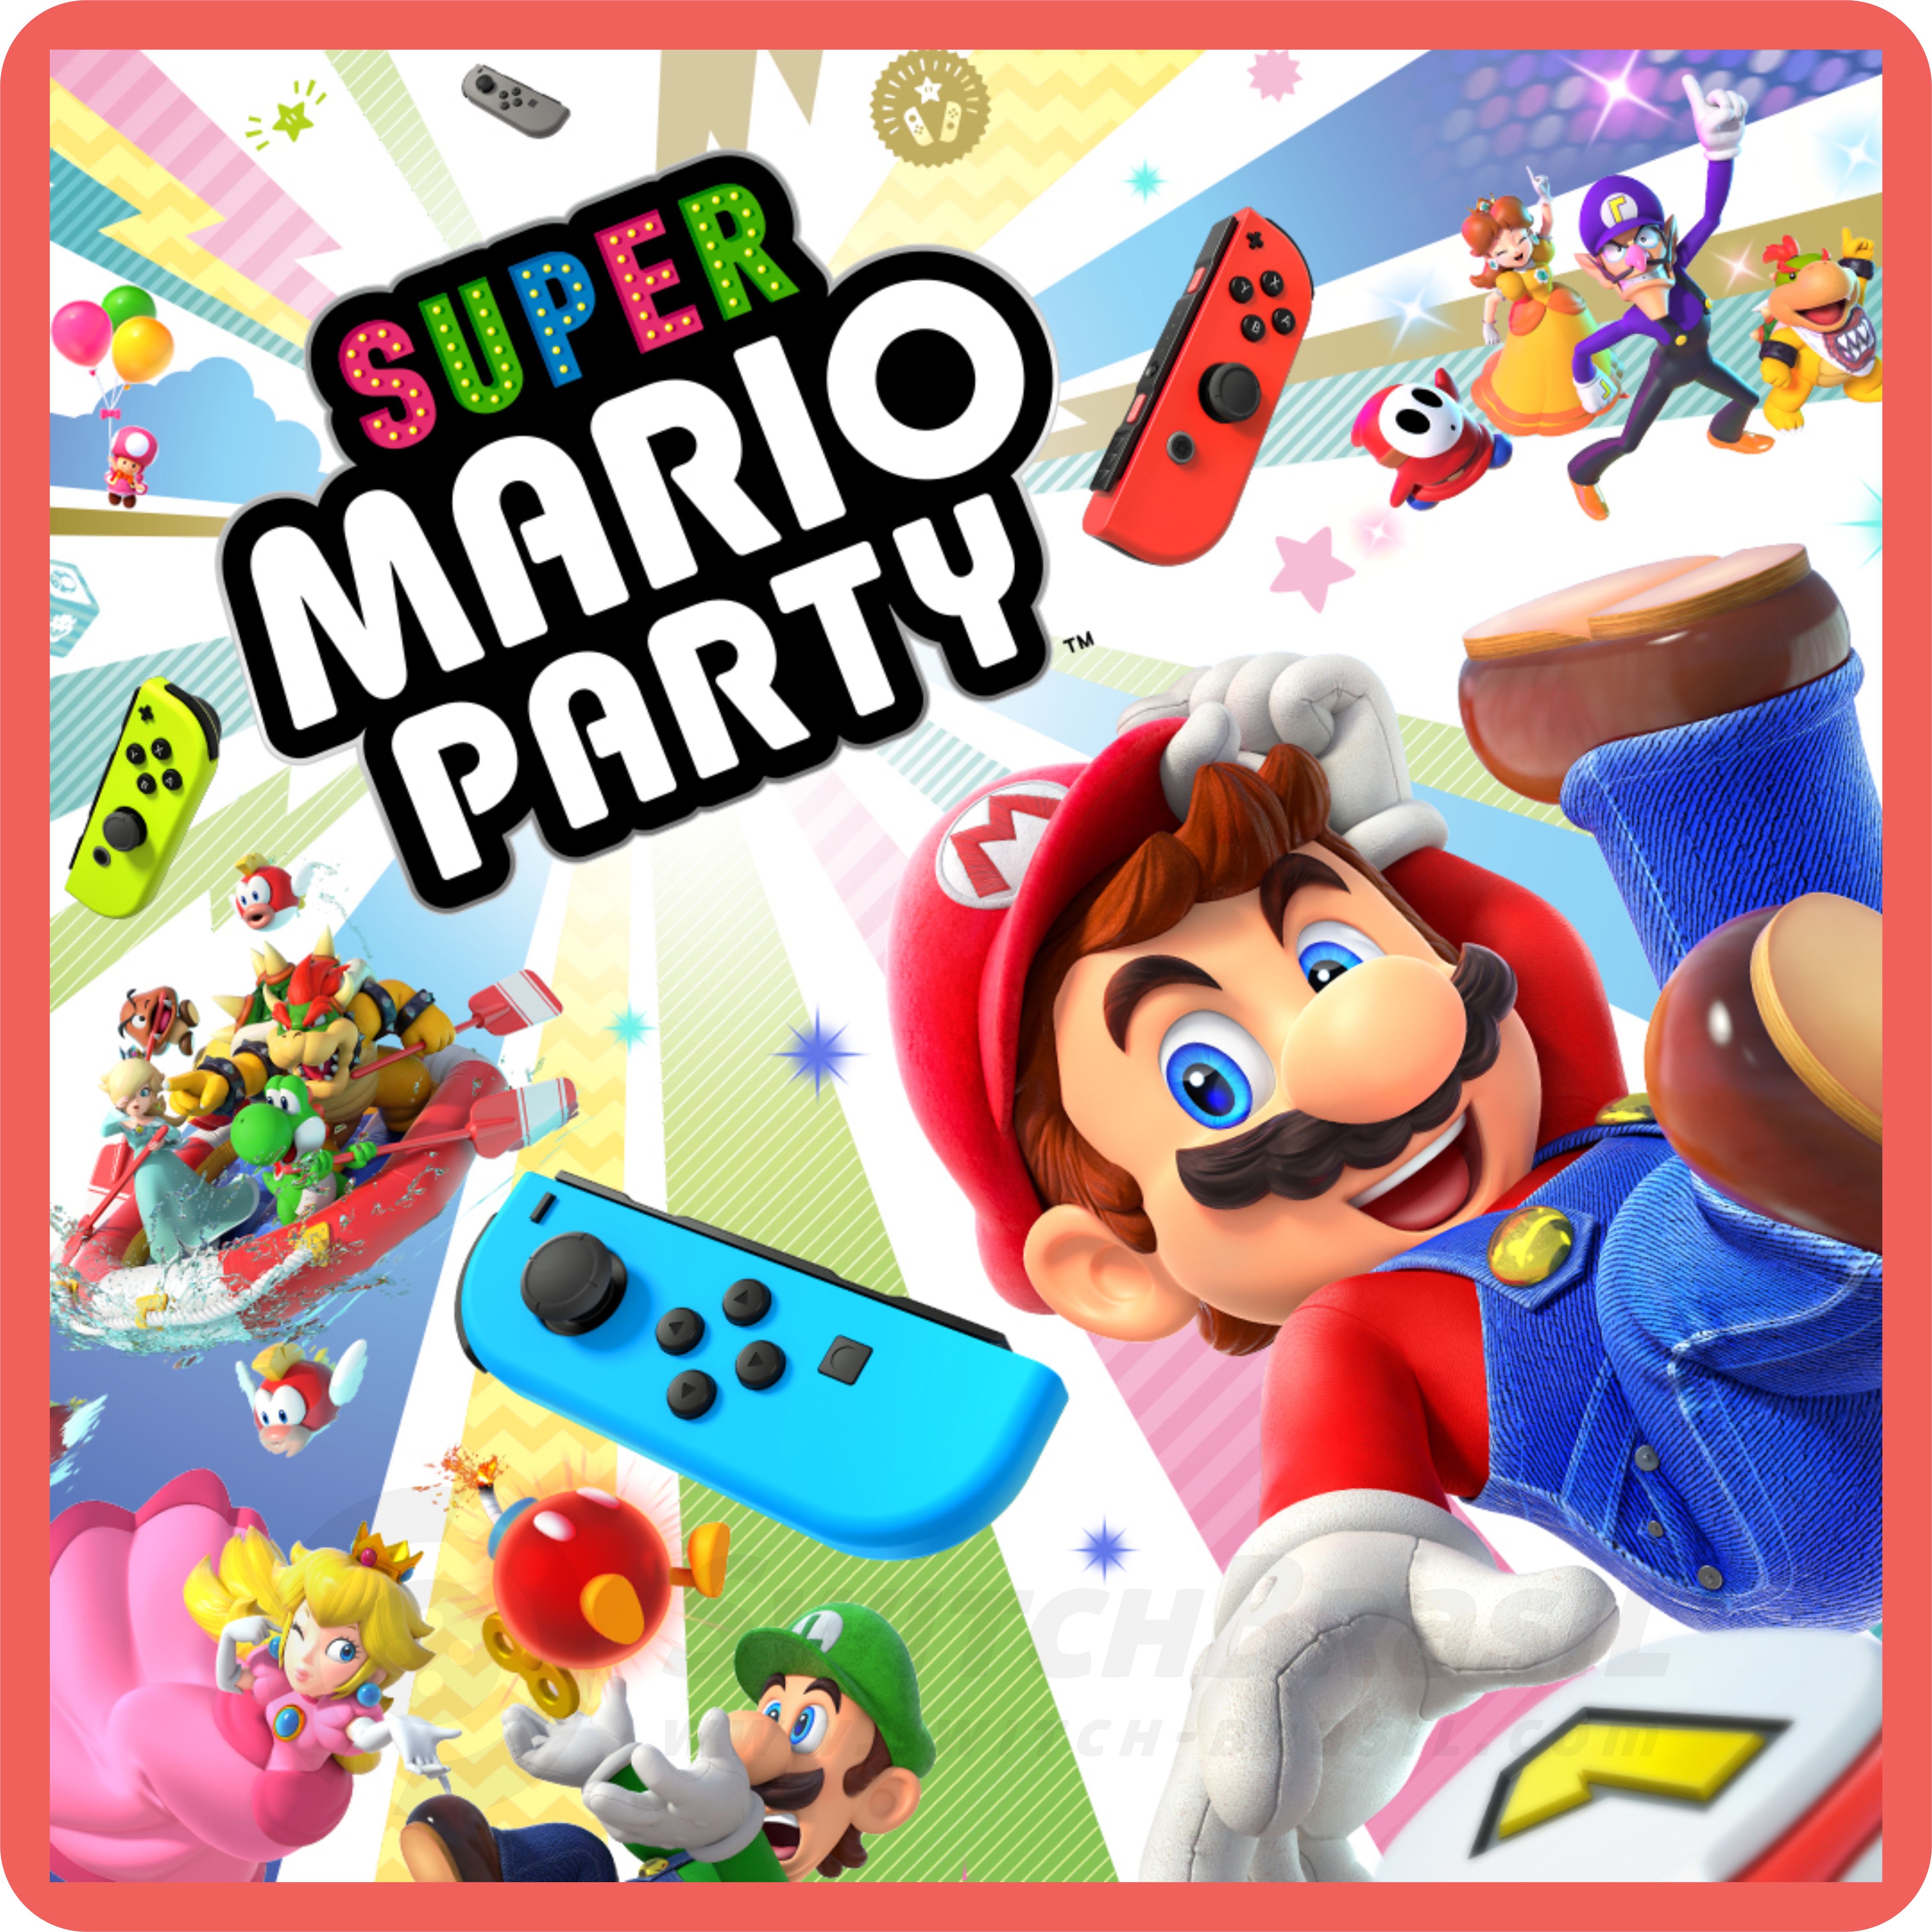 Super Mario Party  Nova atualização (versão 1.1.0) já está disponível,  adiciona o Multiplayer Online ao jogo - NintendoBoy